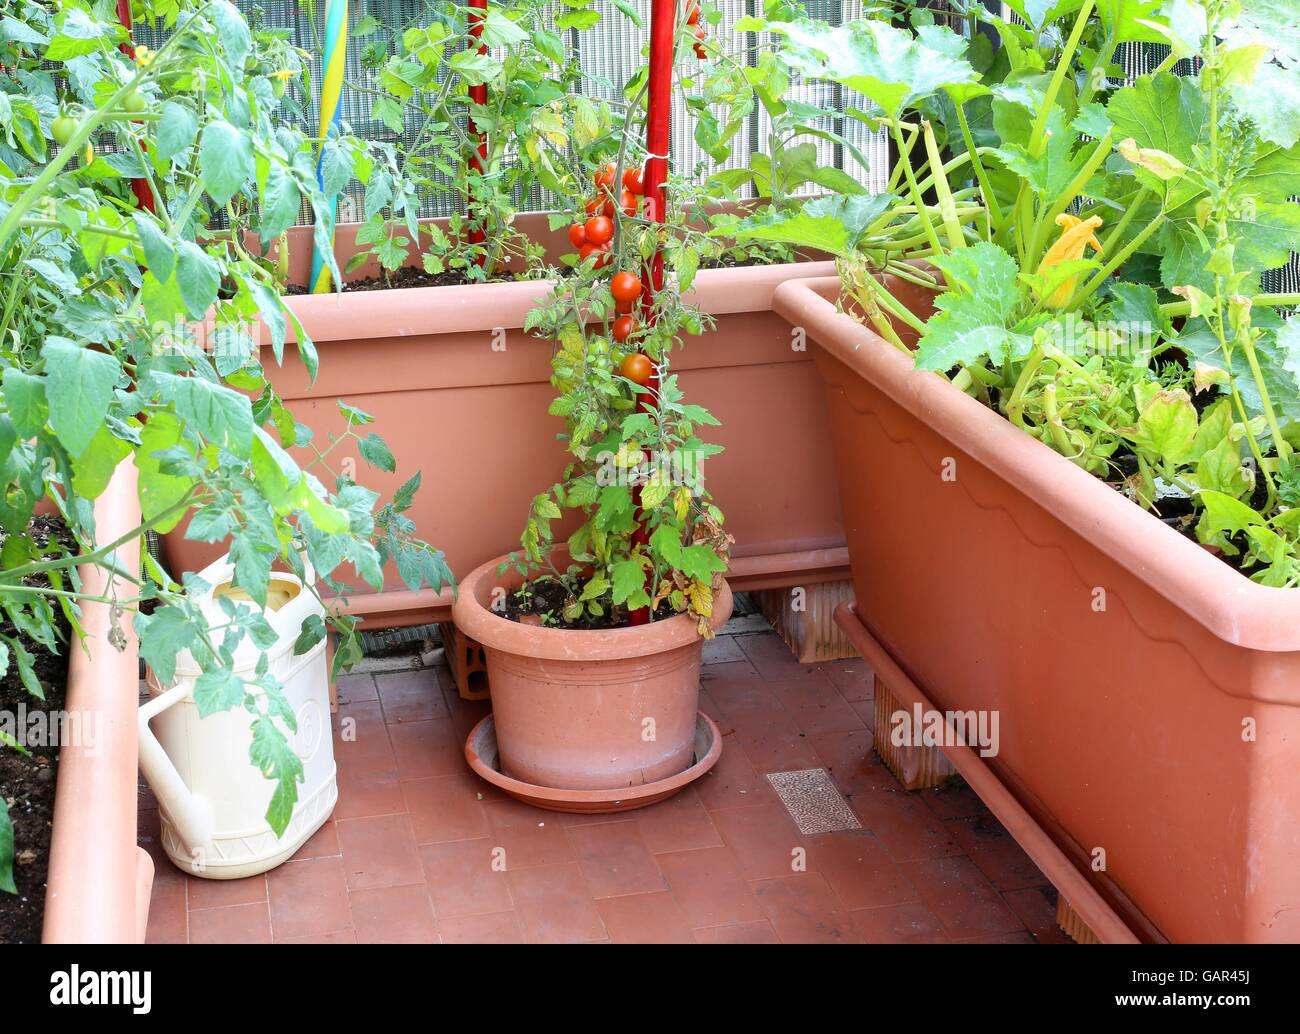 Topfpflanze mit roten strauchtomaten in einem kleinen Stadtgarten auf der Terrassenwohnung Stockfoto